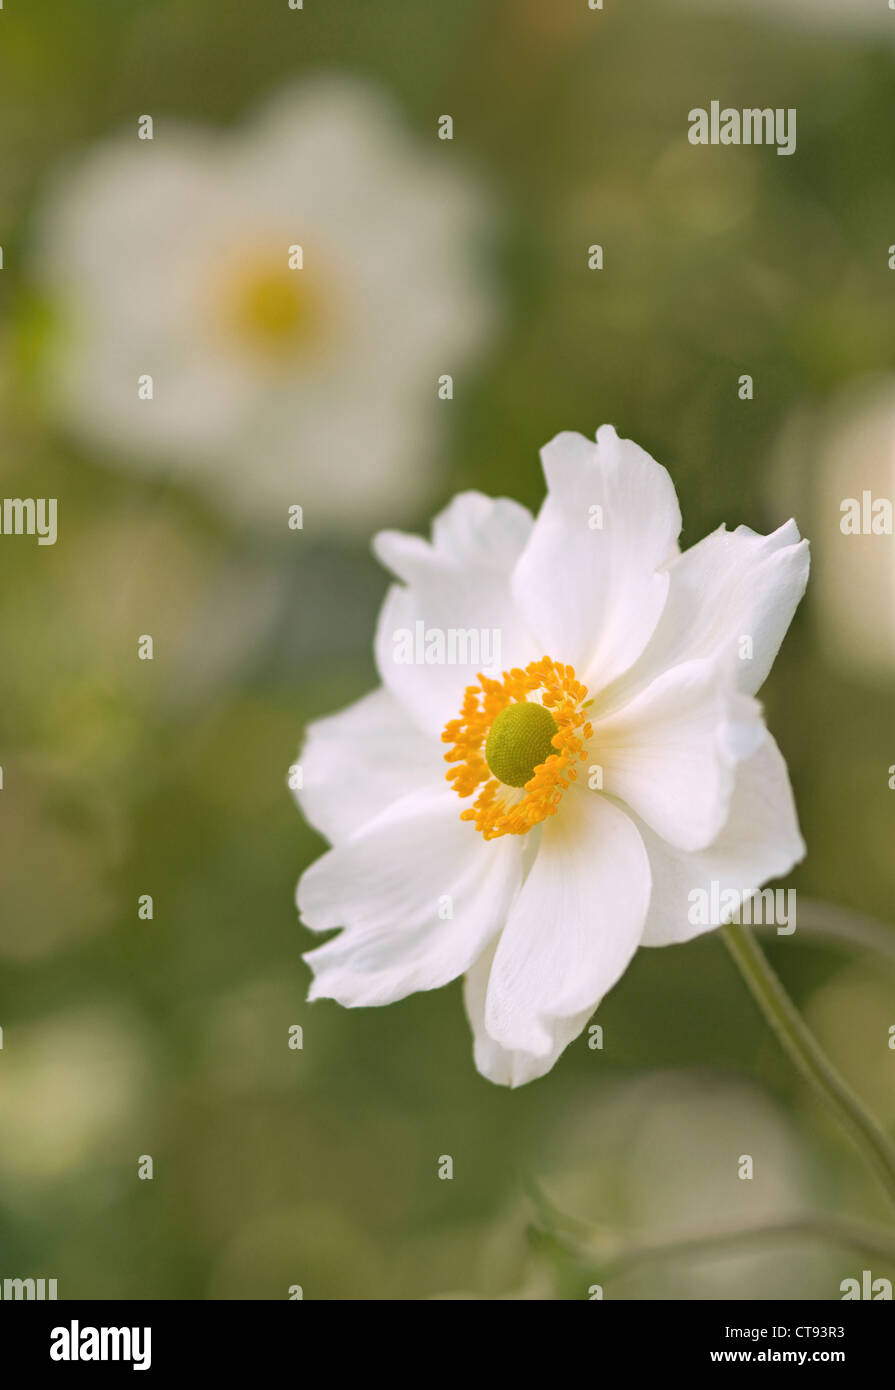 Anemone x hybrida 'Honorine Jobert', anémone japonaise fleur blanche isolée dans l'accent peu profonde sur un fond vert. Banque D'Images